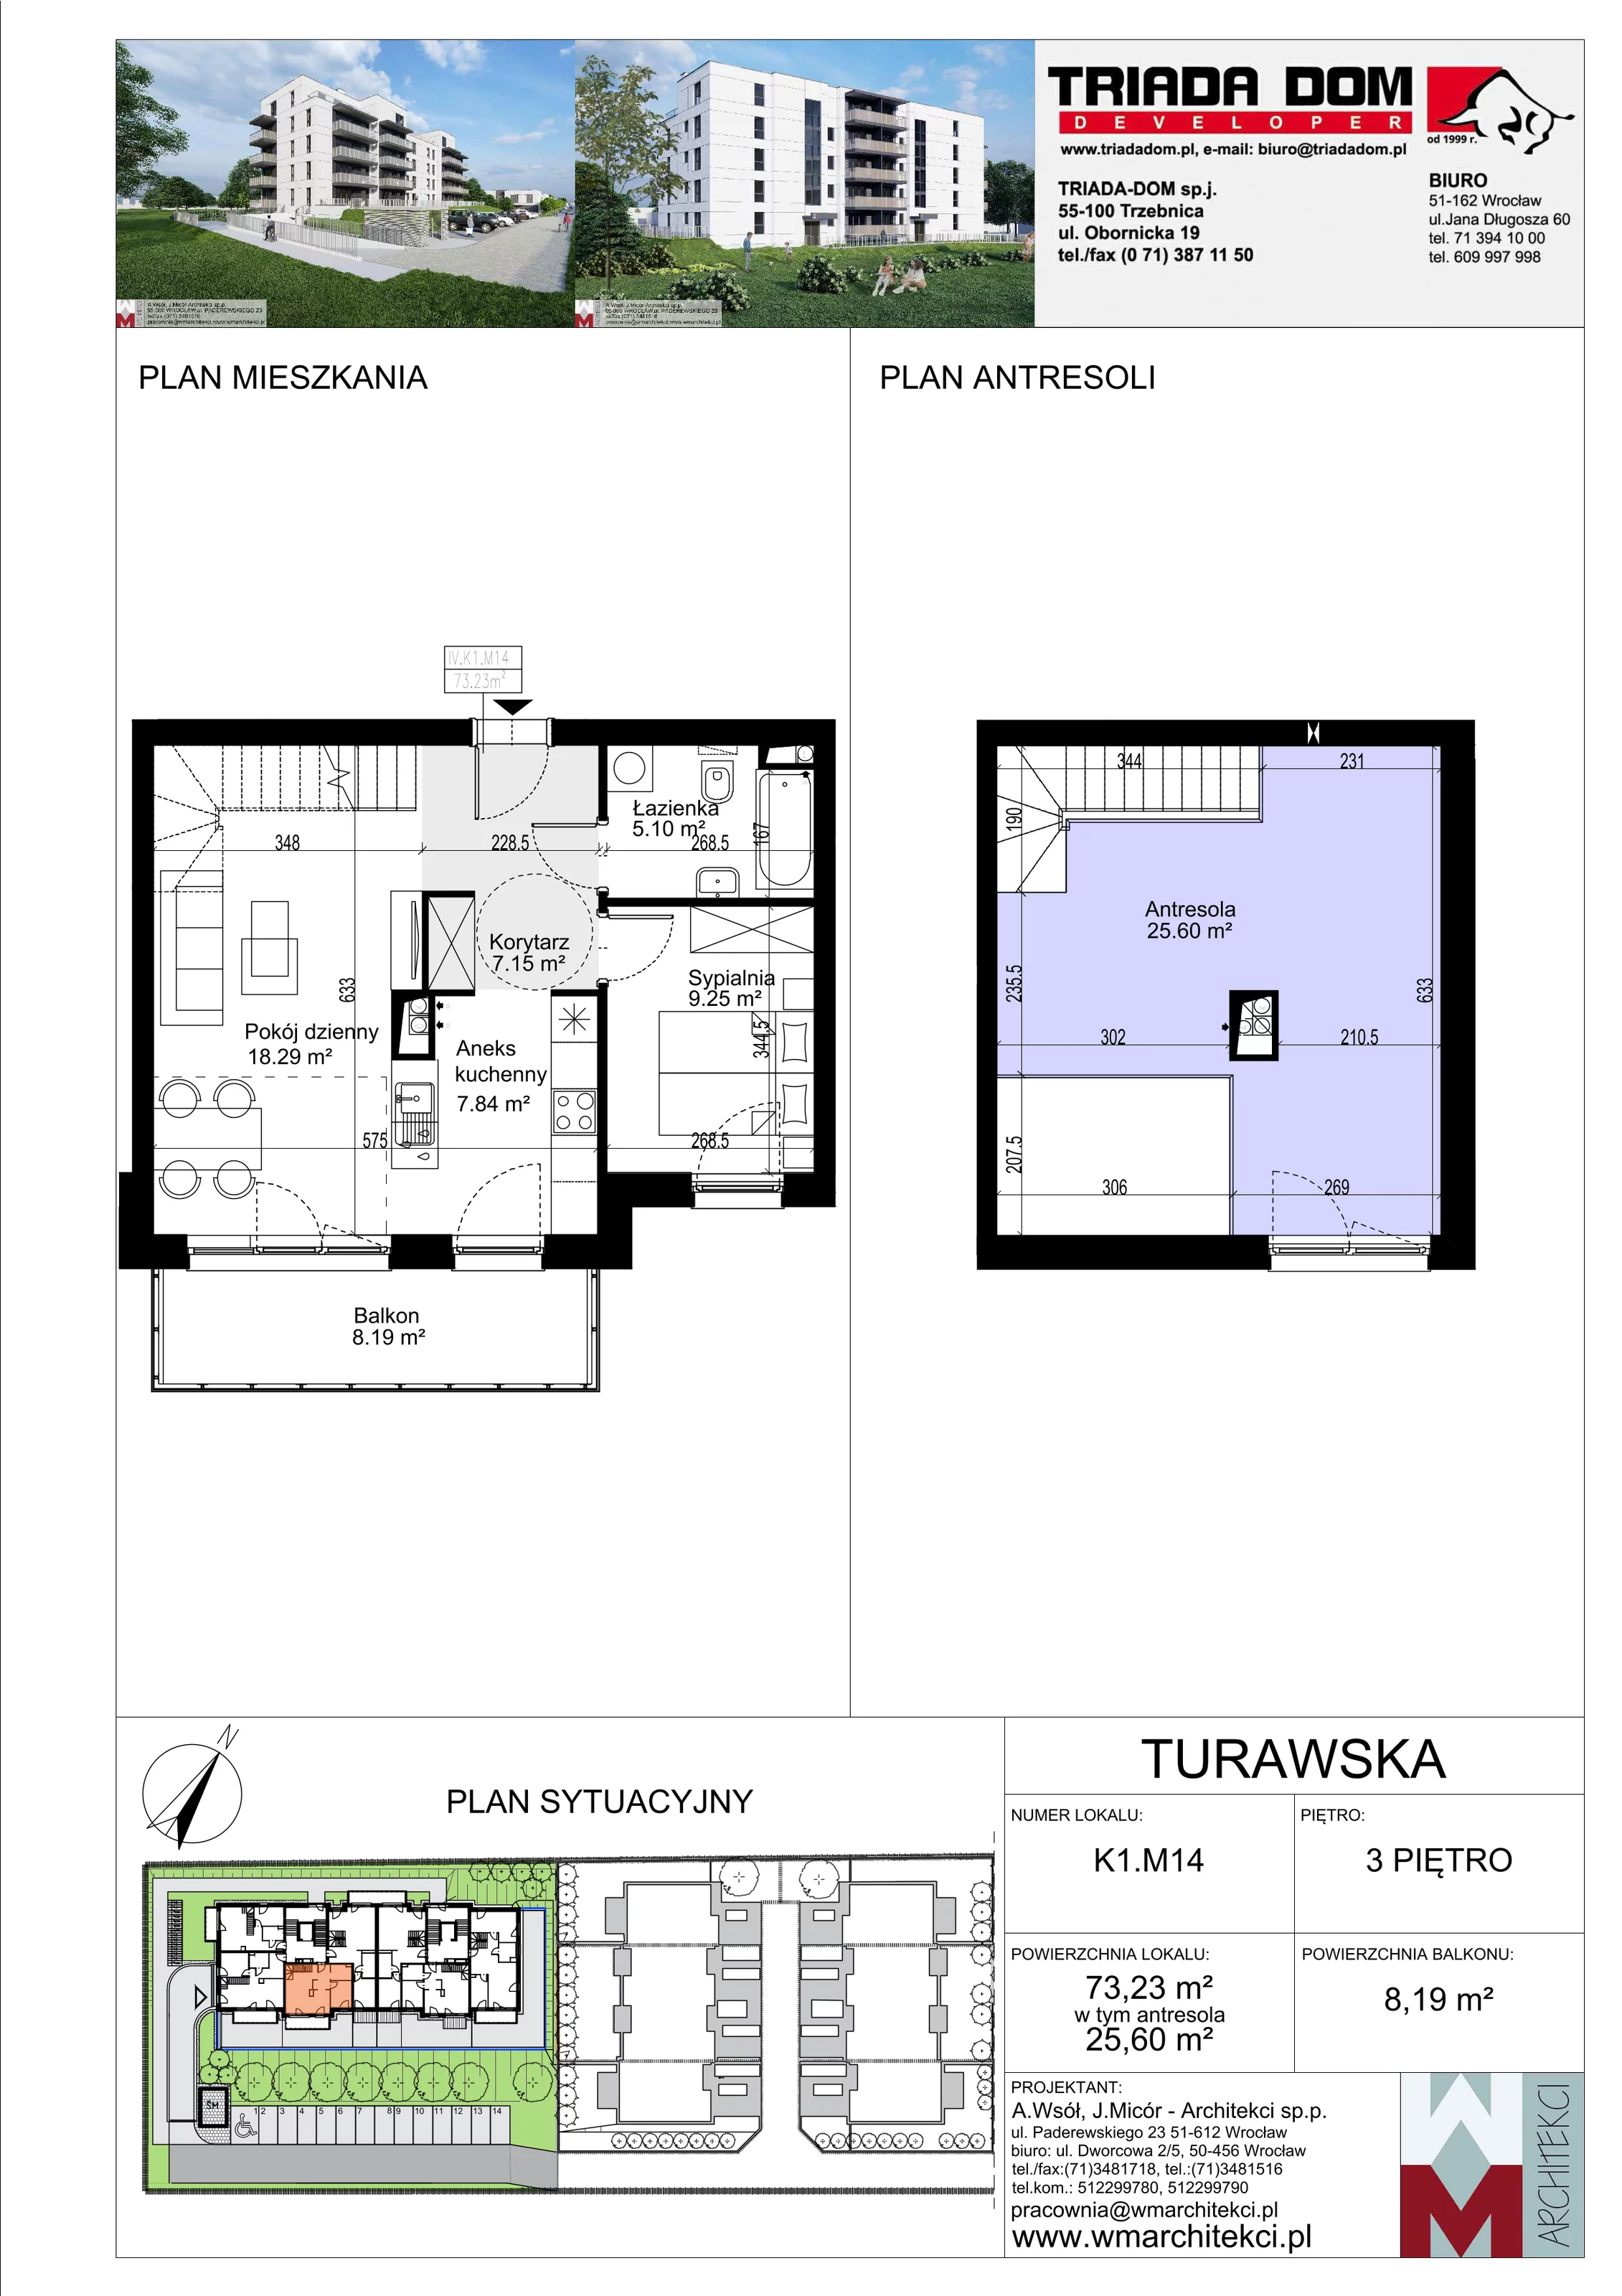 Mieszkanie 73,23 m², piętro 3, oferta nr K1.M14, Ogrody Turawska, Wrocław, Księże, Krzyki, ul. Turawska 78